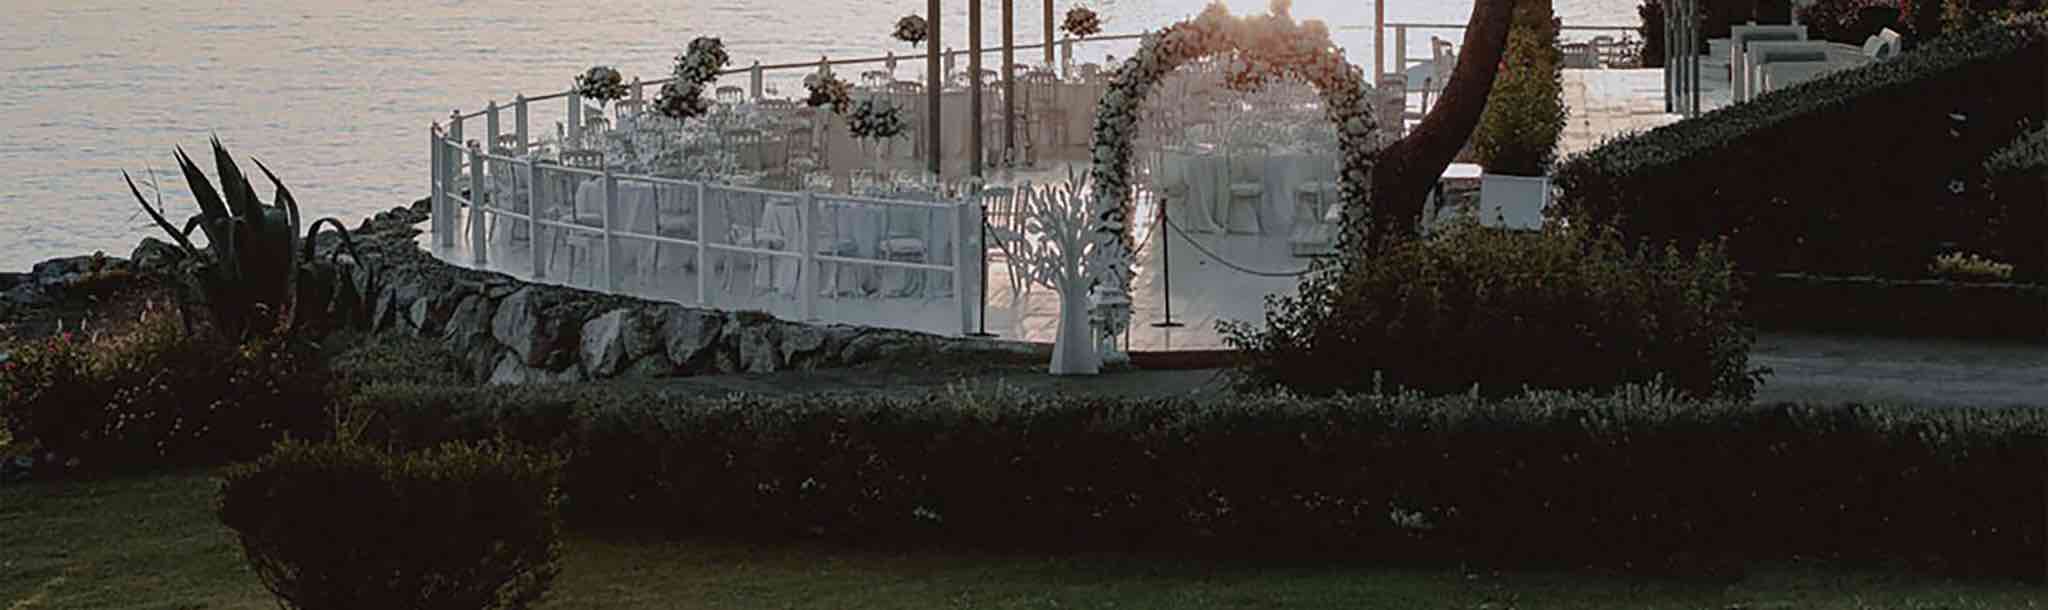 dettagli location Santa Venere di maratea durante un matrimonio realizzato da Giuseppe Bruno fotografo